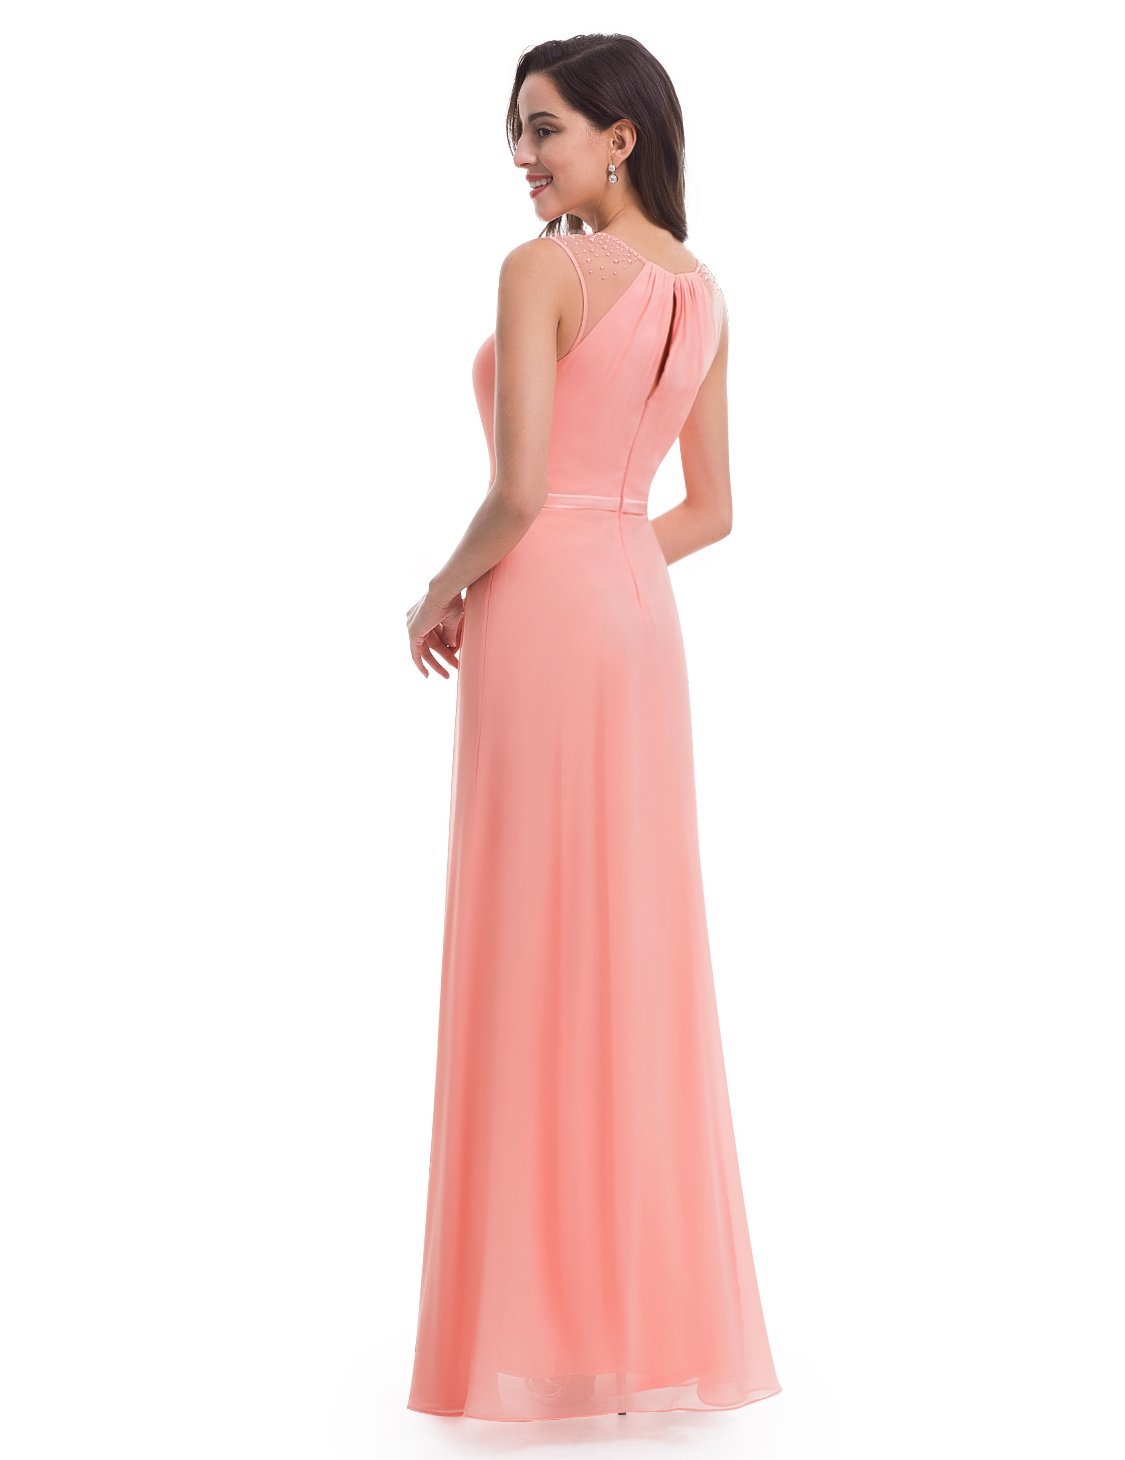 Women's Elegant Sleeveless Long Dress